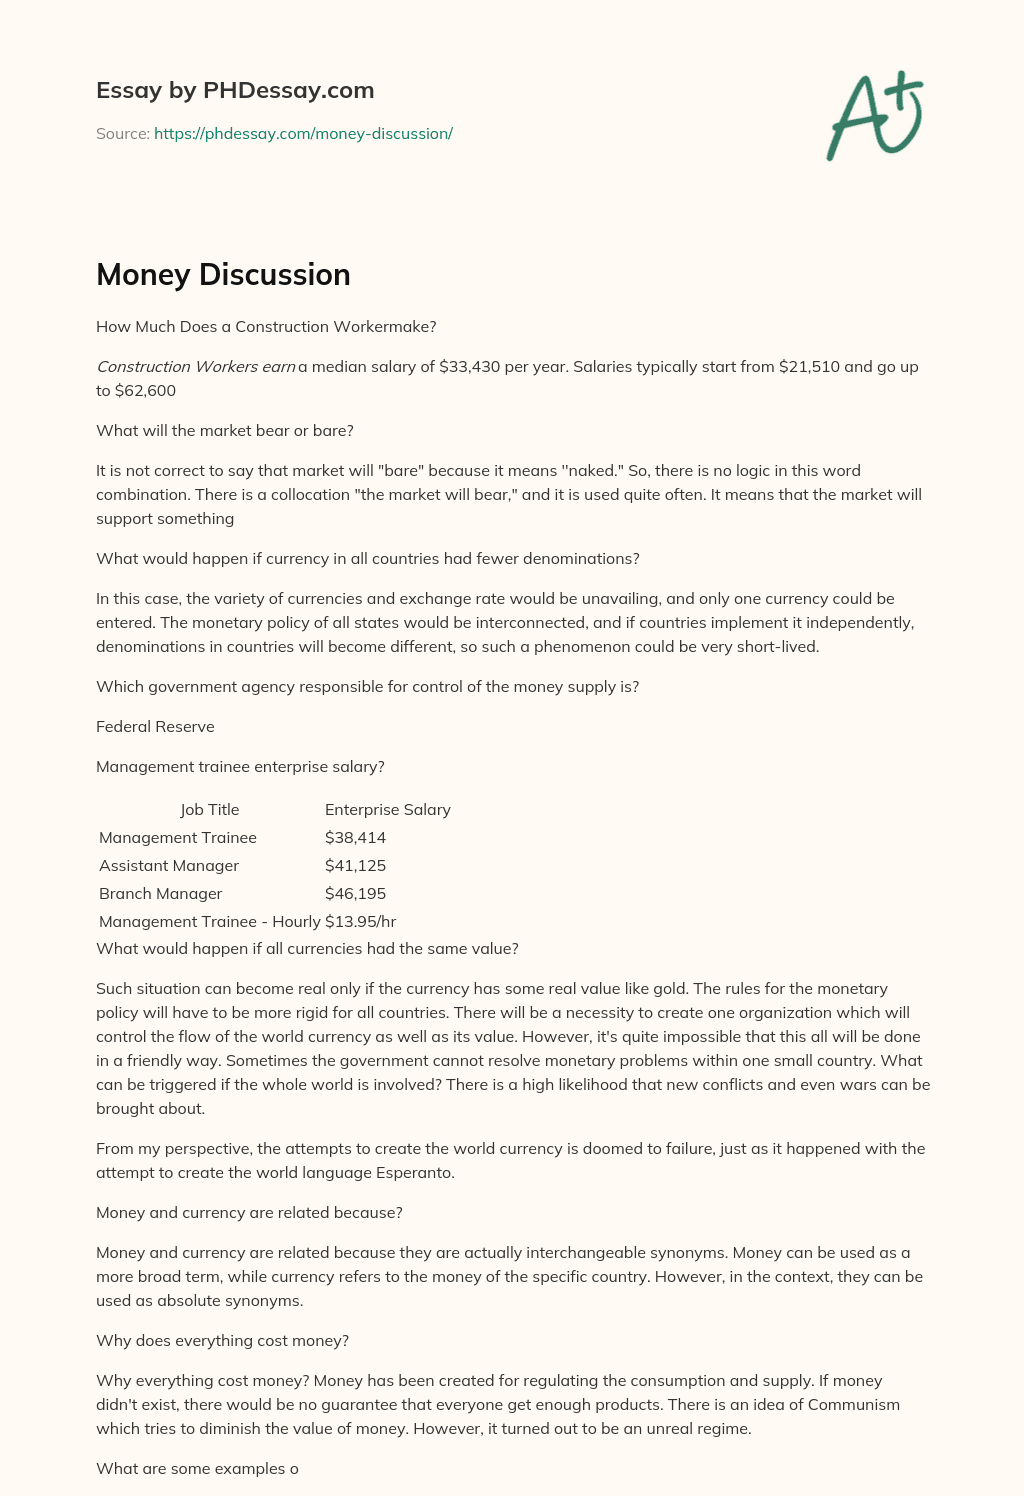 Money Discussion essay